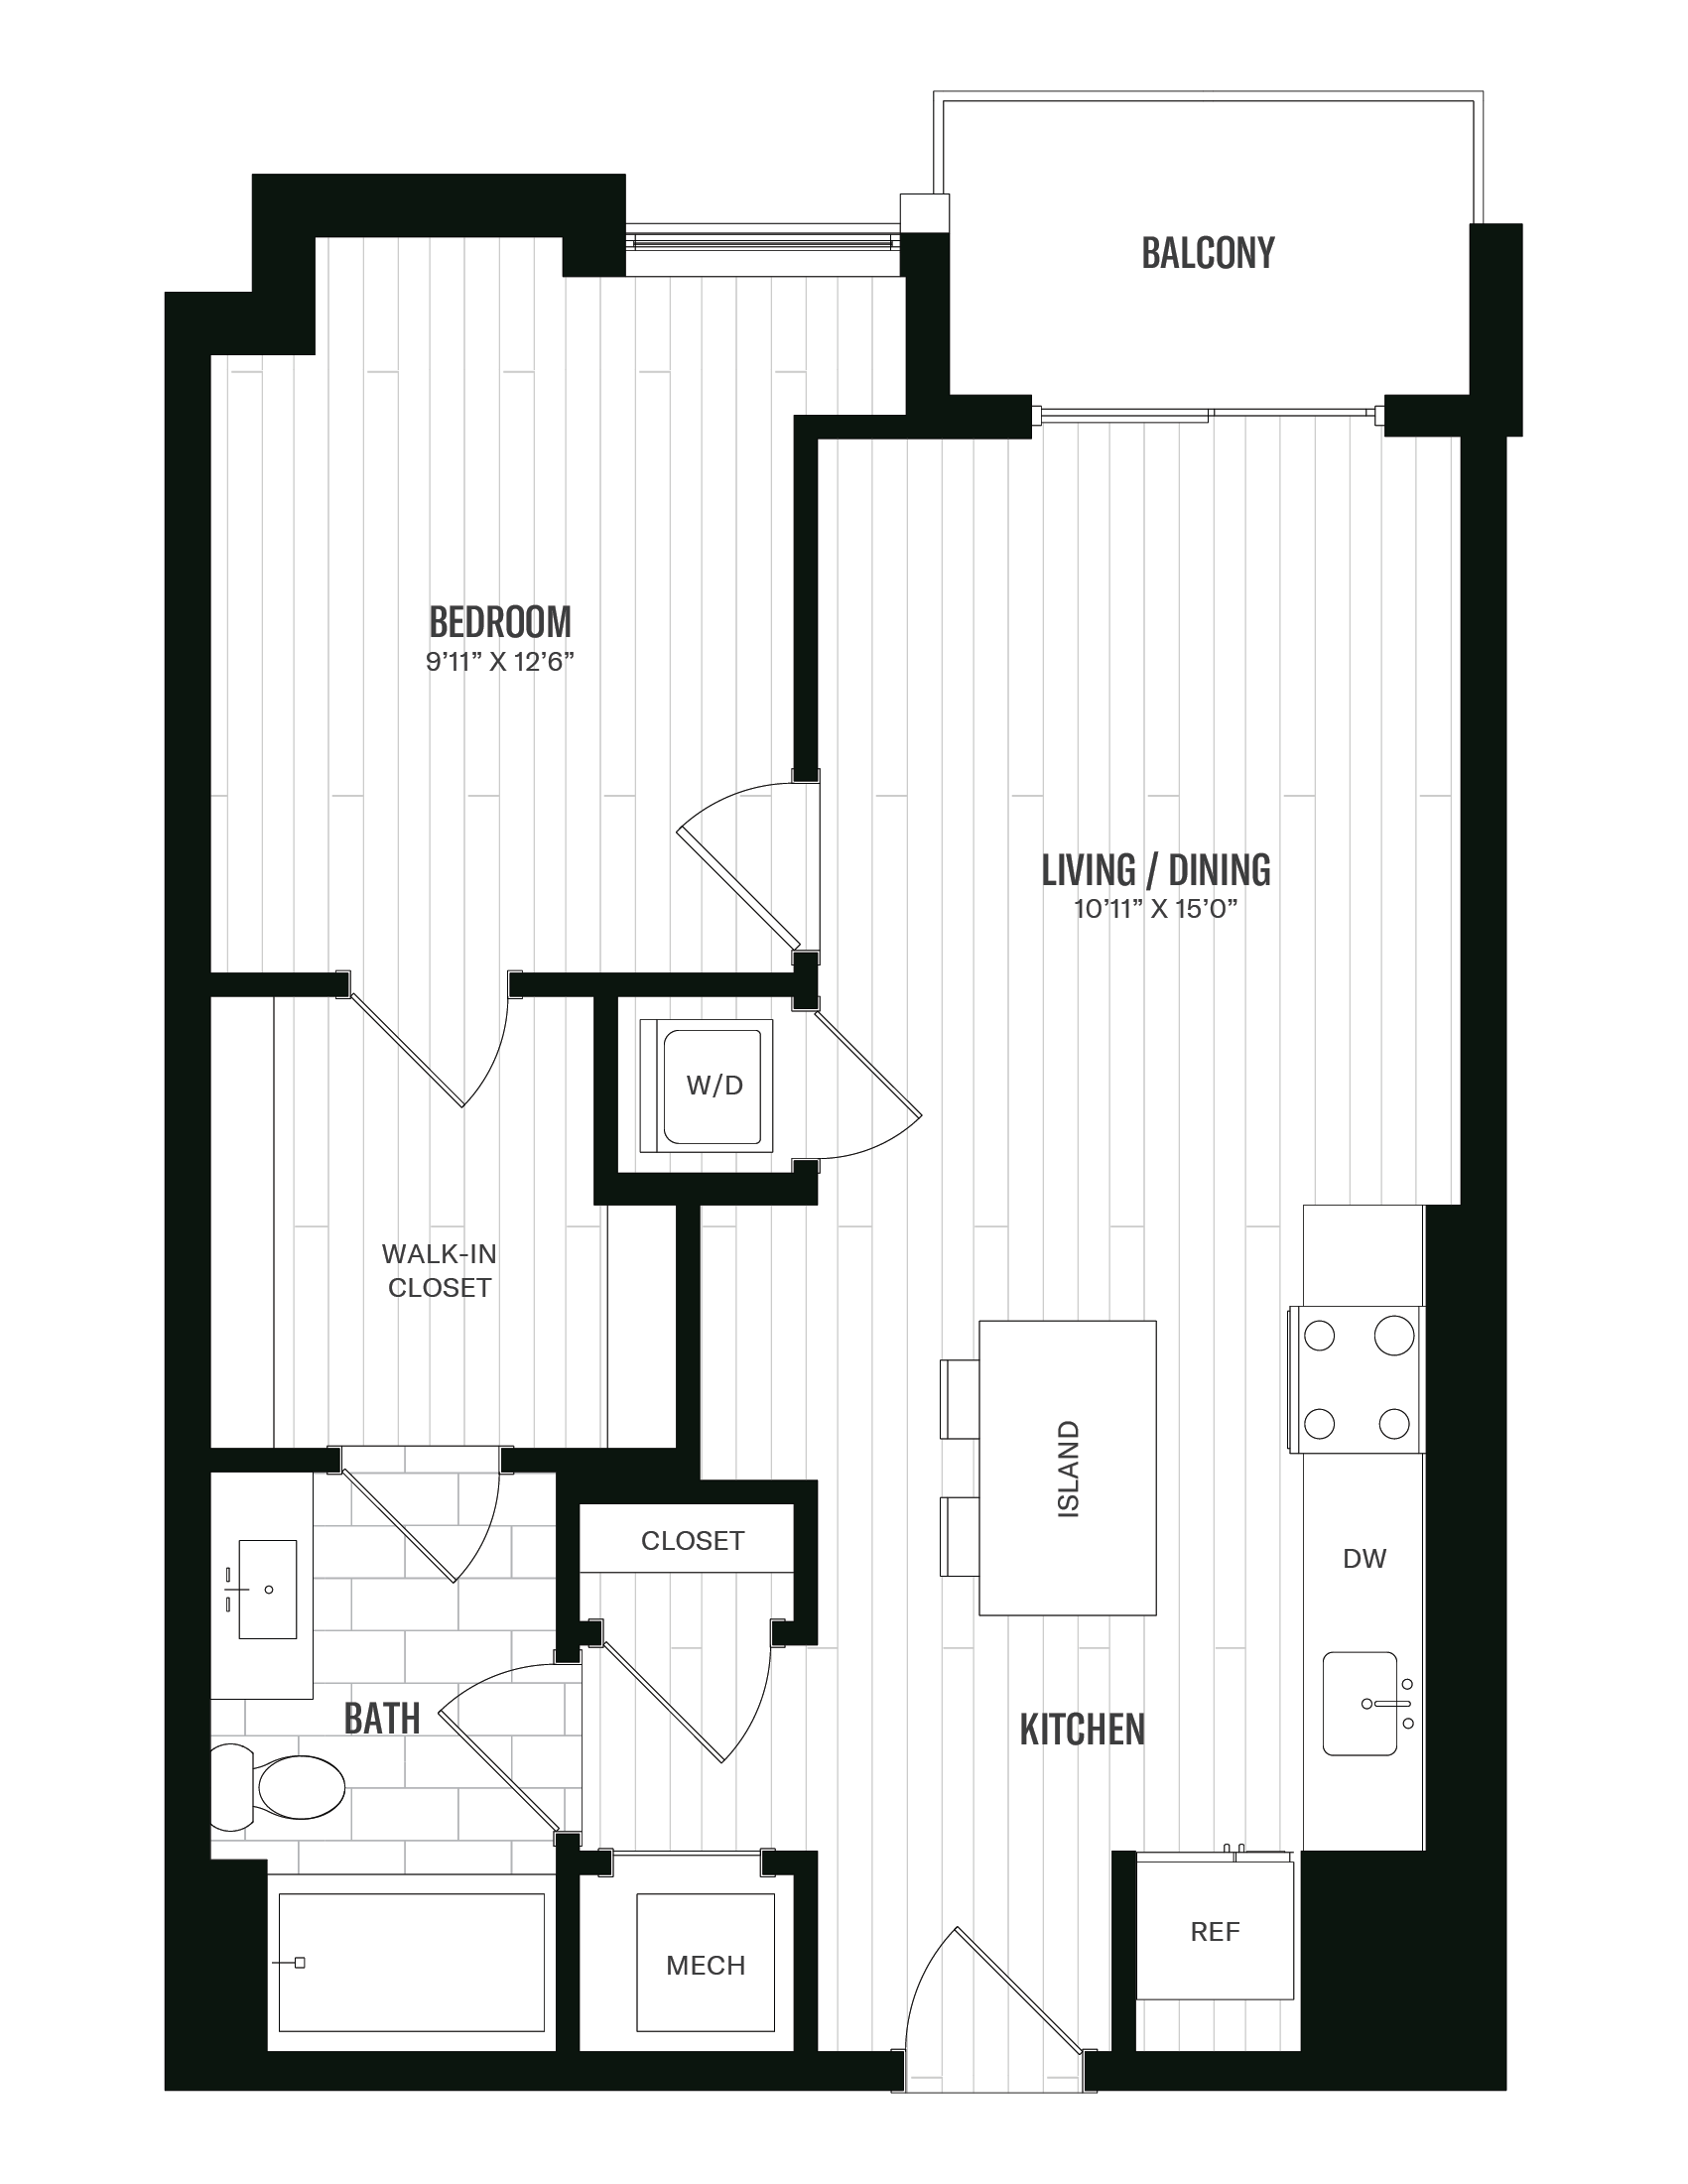 Floorplan image of unit 508